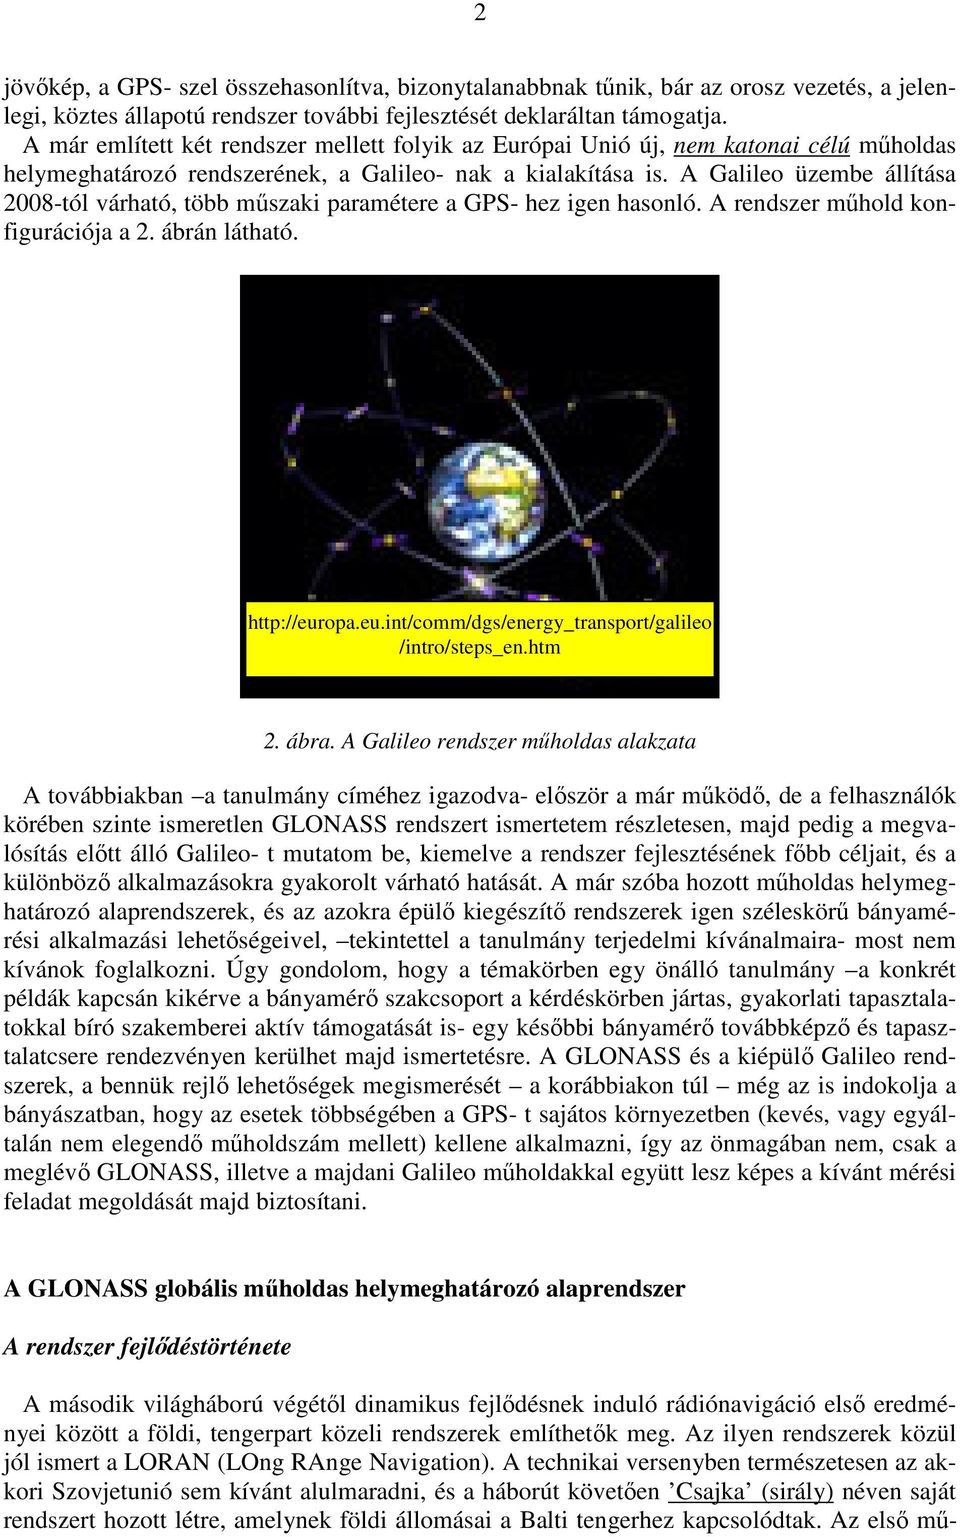 A Galileo üzembe állítása 2008-tól várható, több mőszaki paramétere a GPS- hez igen hasonló. A rendszer mőhold konfigurációja a 2. ábrán látható.